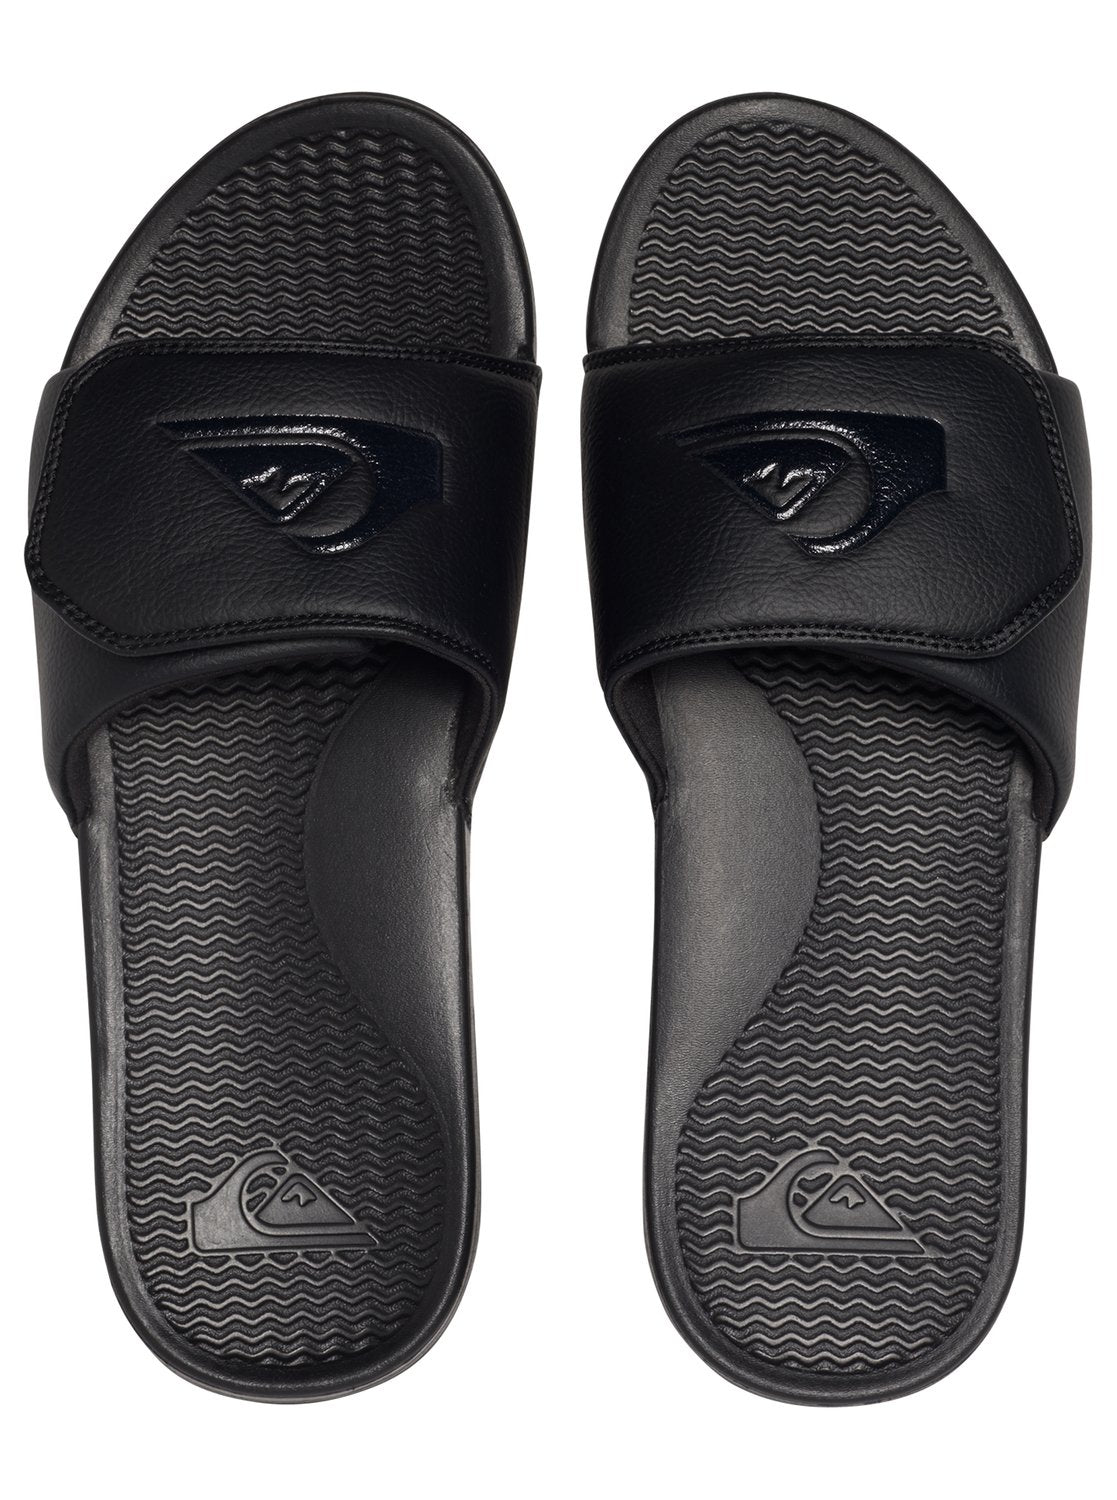 Quiksilver Shoreline Adjust Youth Sandal Solid Black 11 C